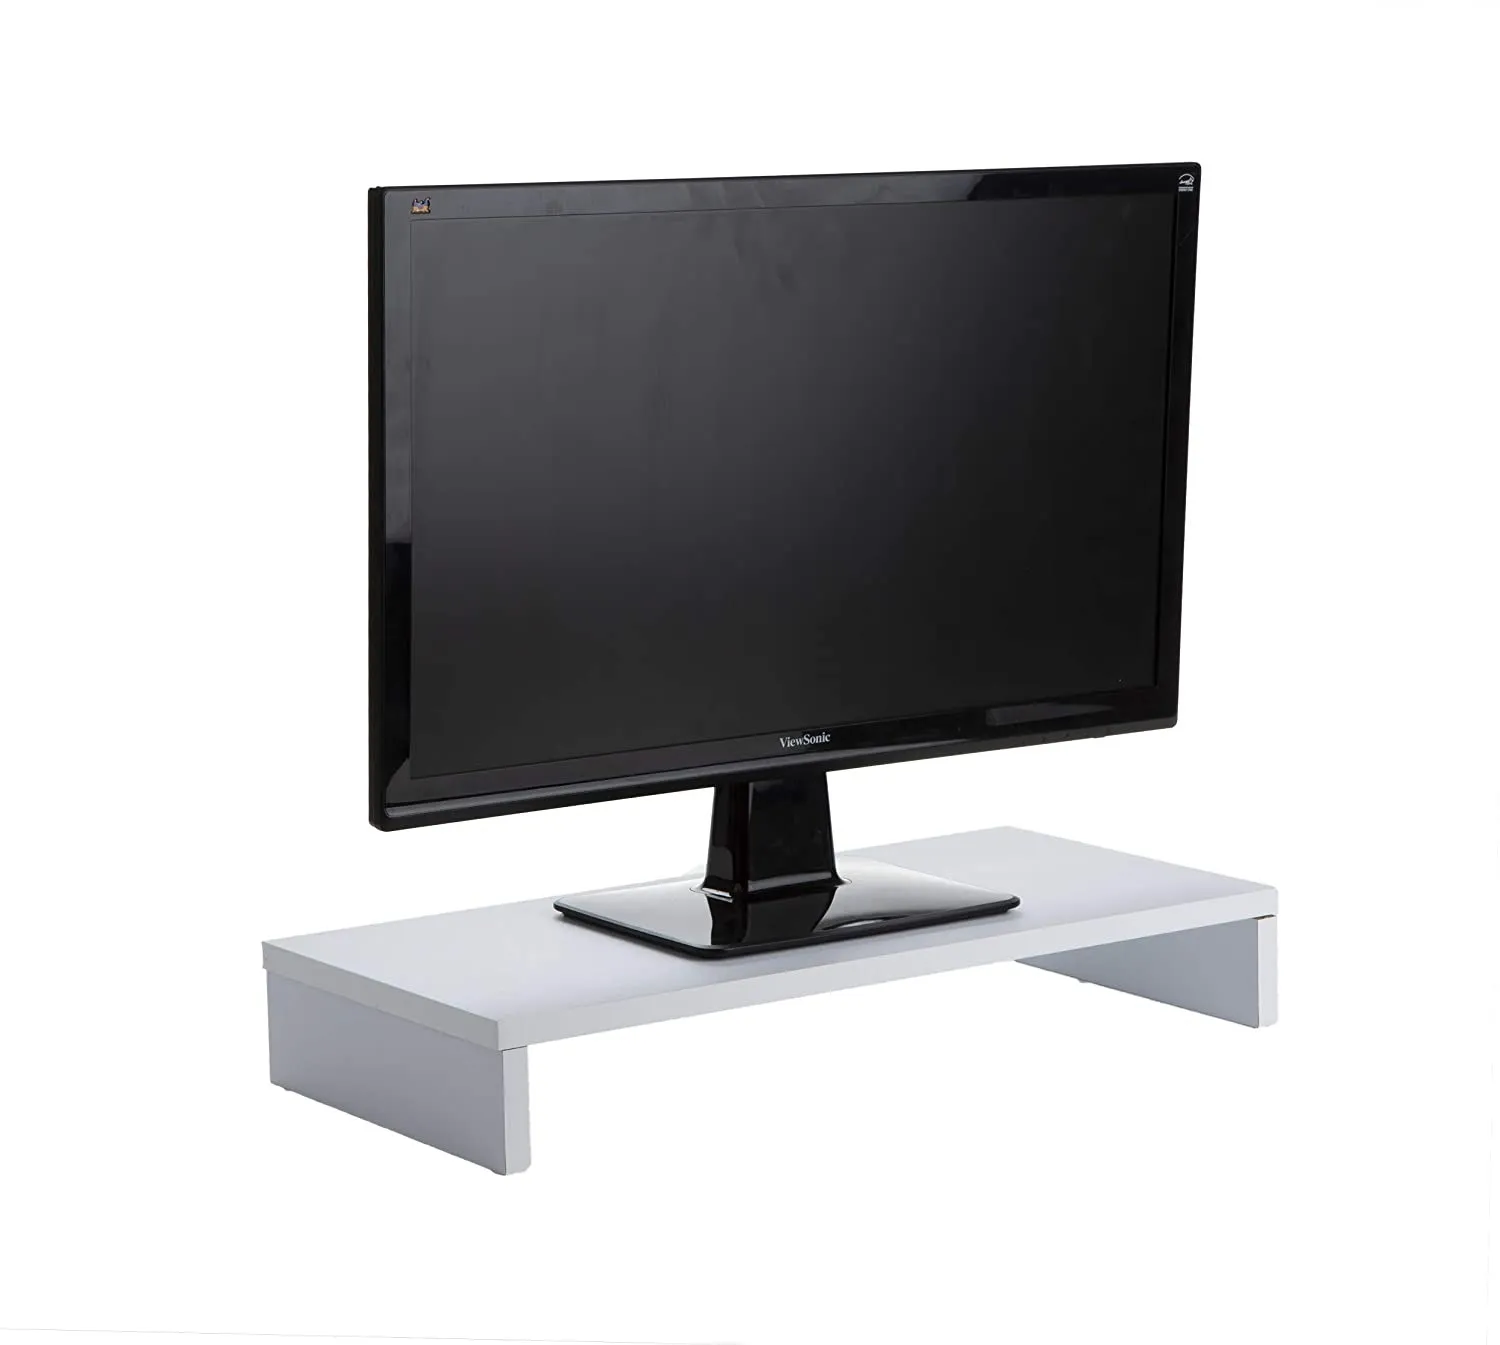 Support en bois pour ordinateur, PC, iMac, imprimante, haut-parleurs, écrans, TV, support pour moniteur blanc